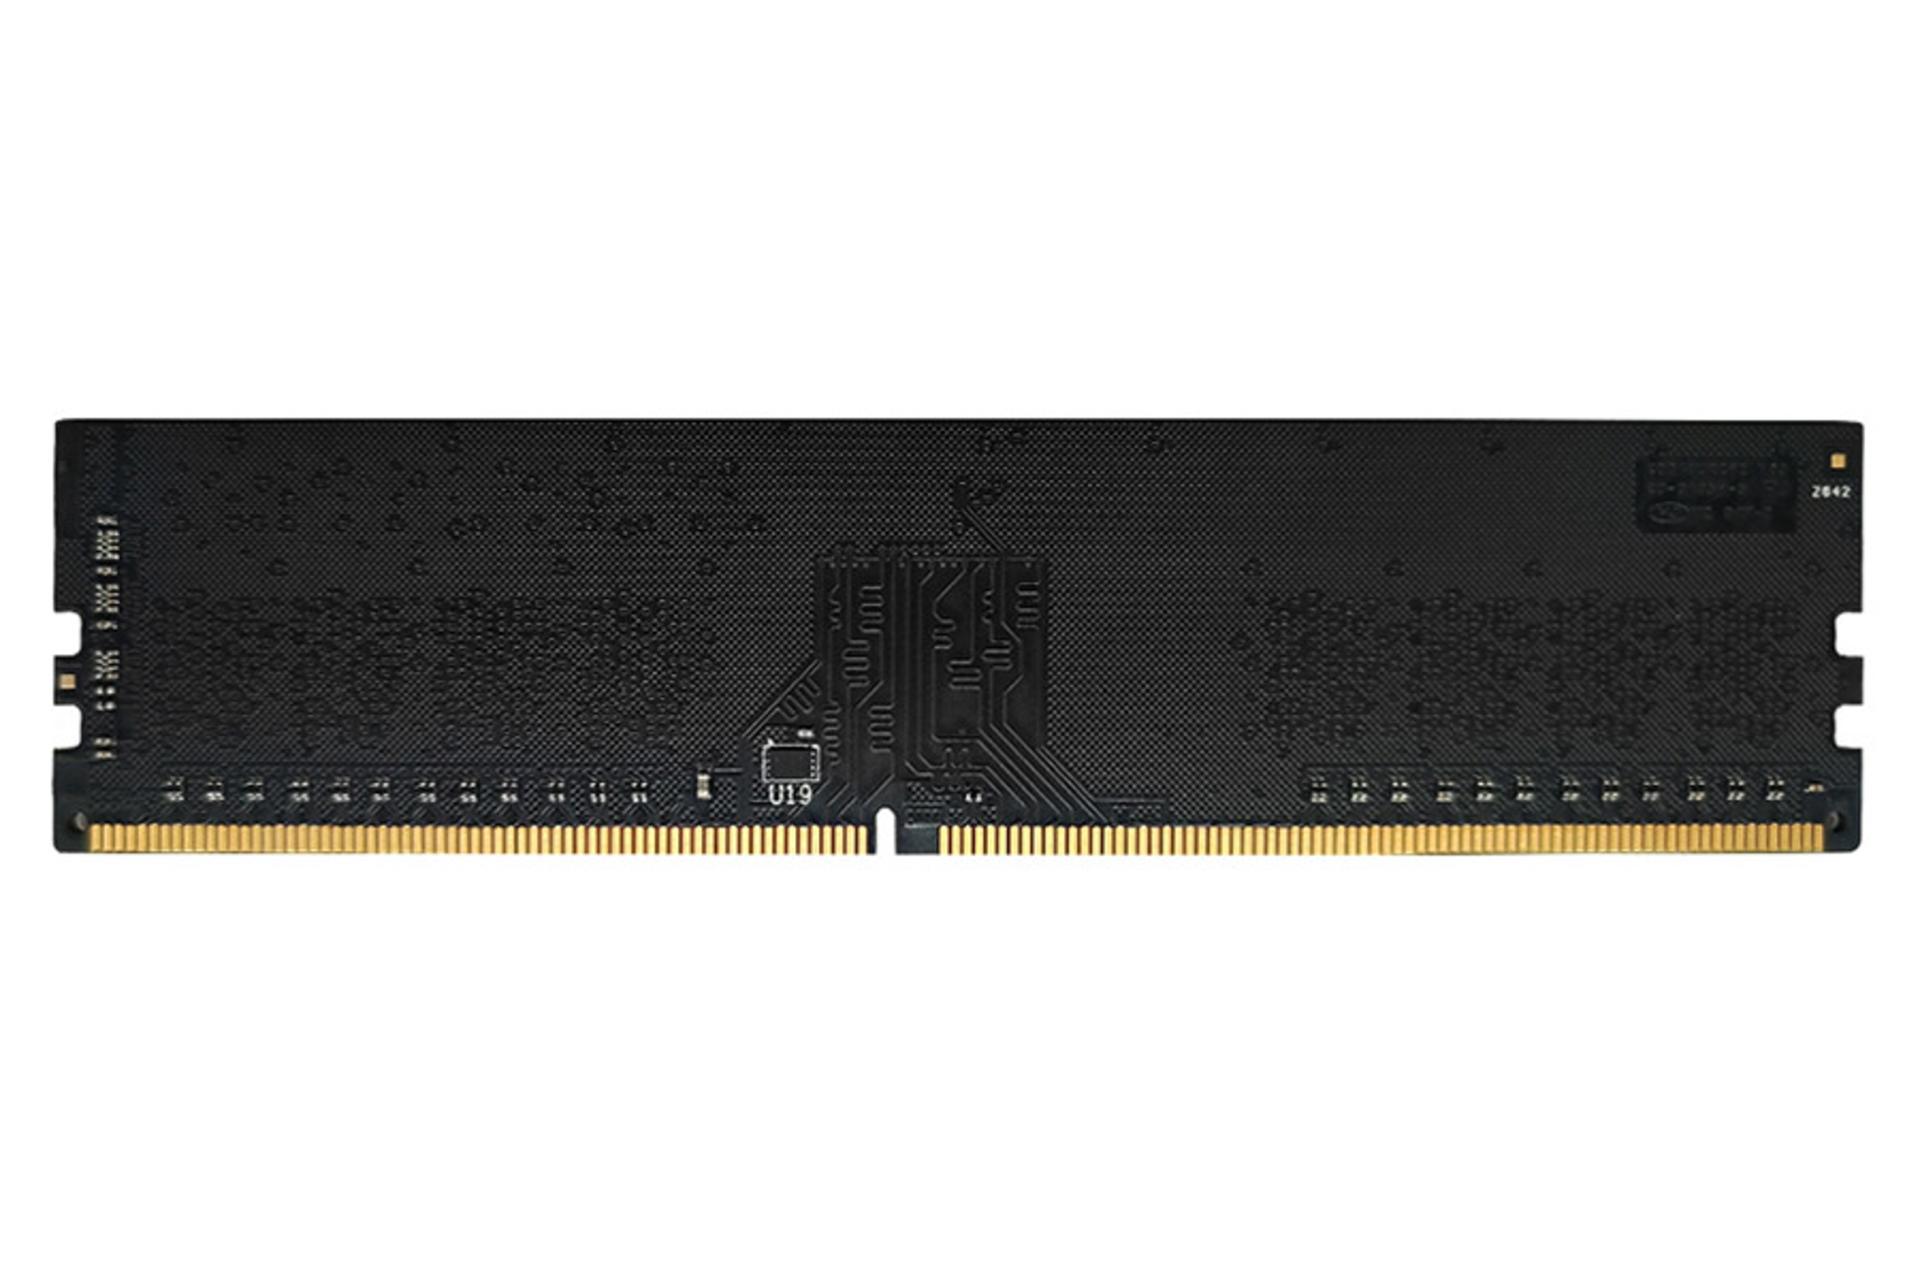 نمای پشت رم کینگ مکس GLAF62F-D8K8H5 ظرفیت 4 گیگابایت از نوع DDR4-2666